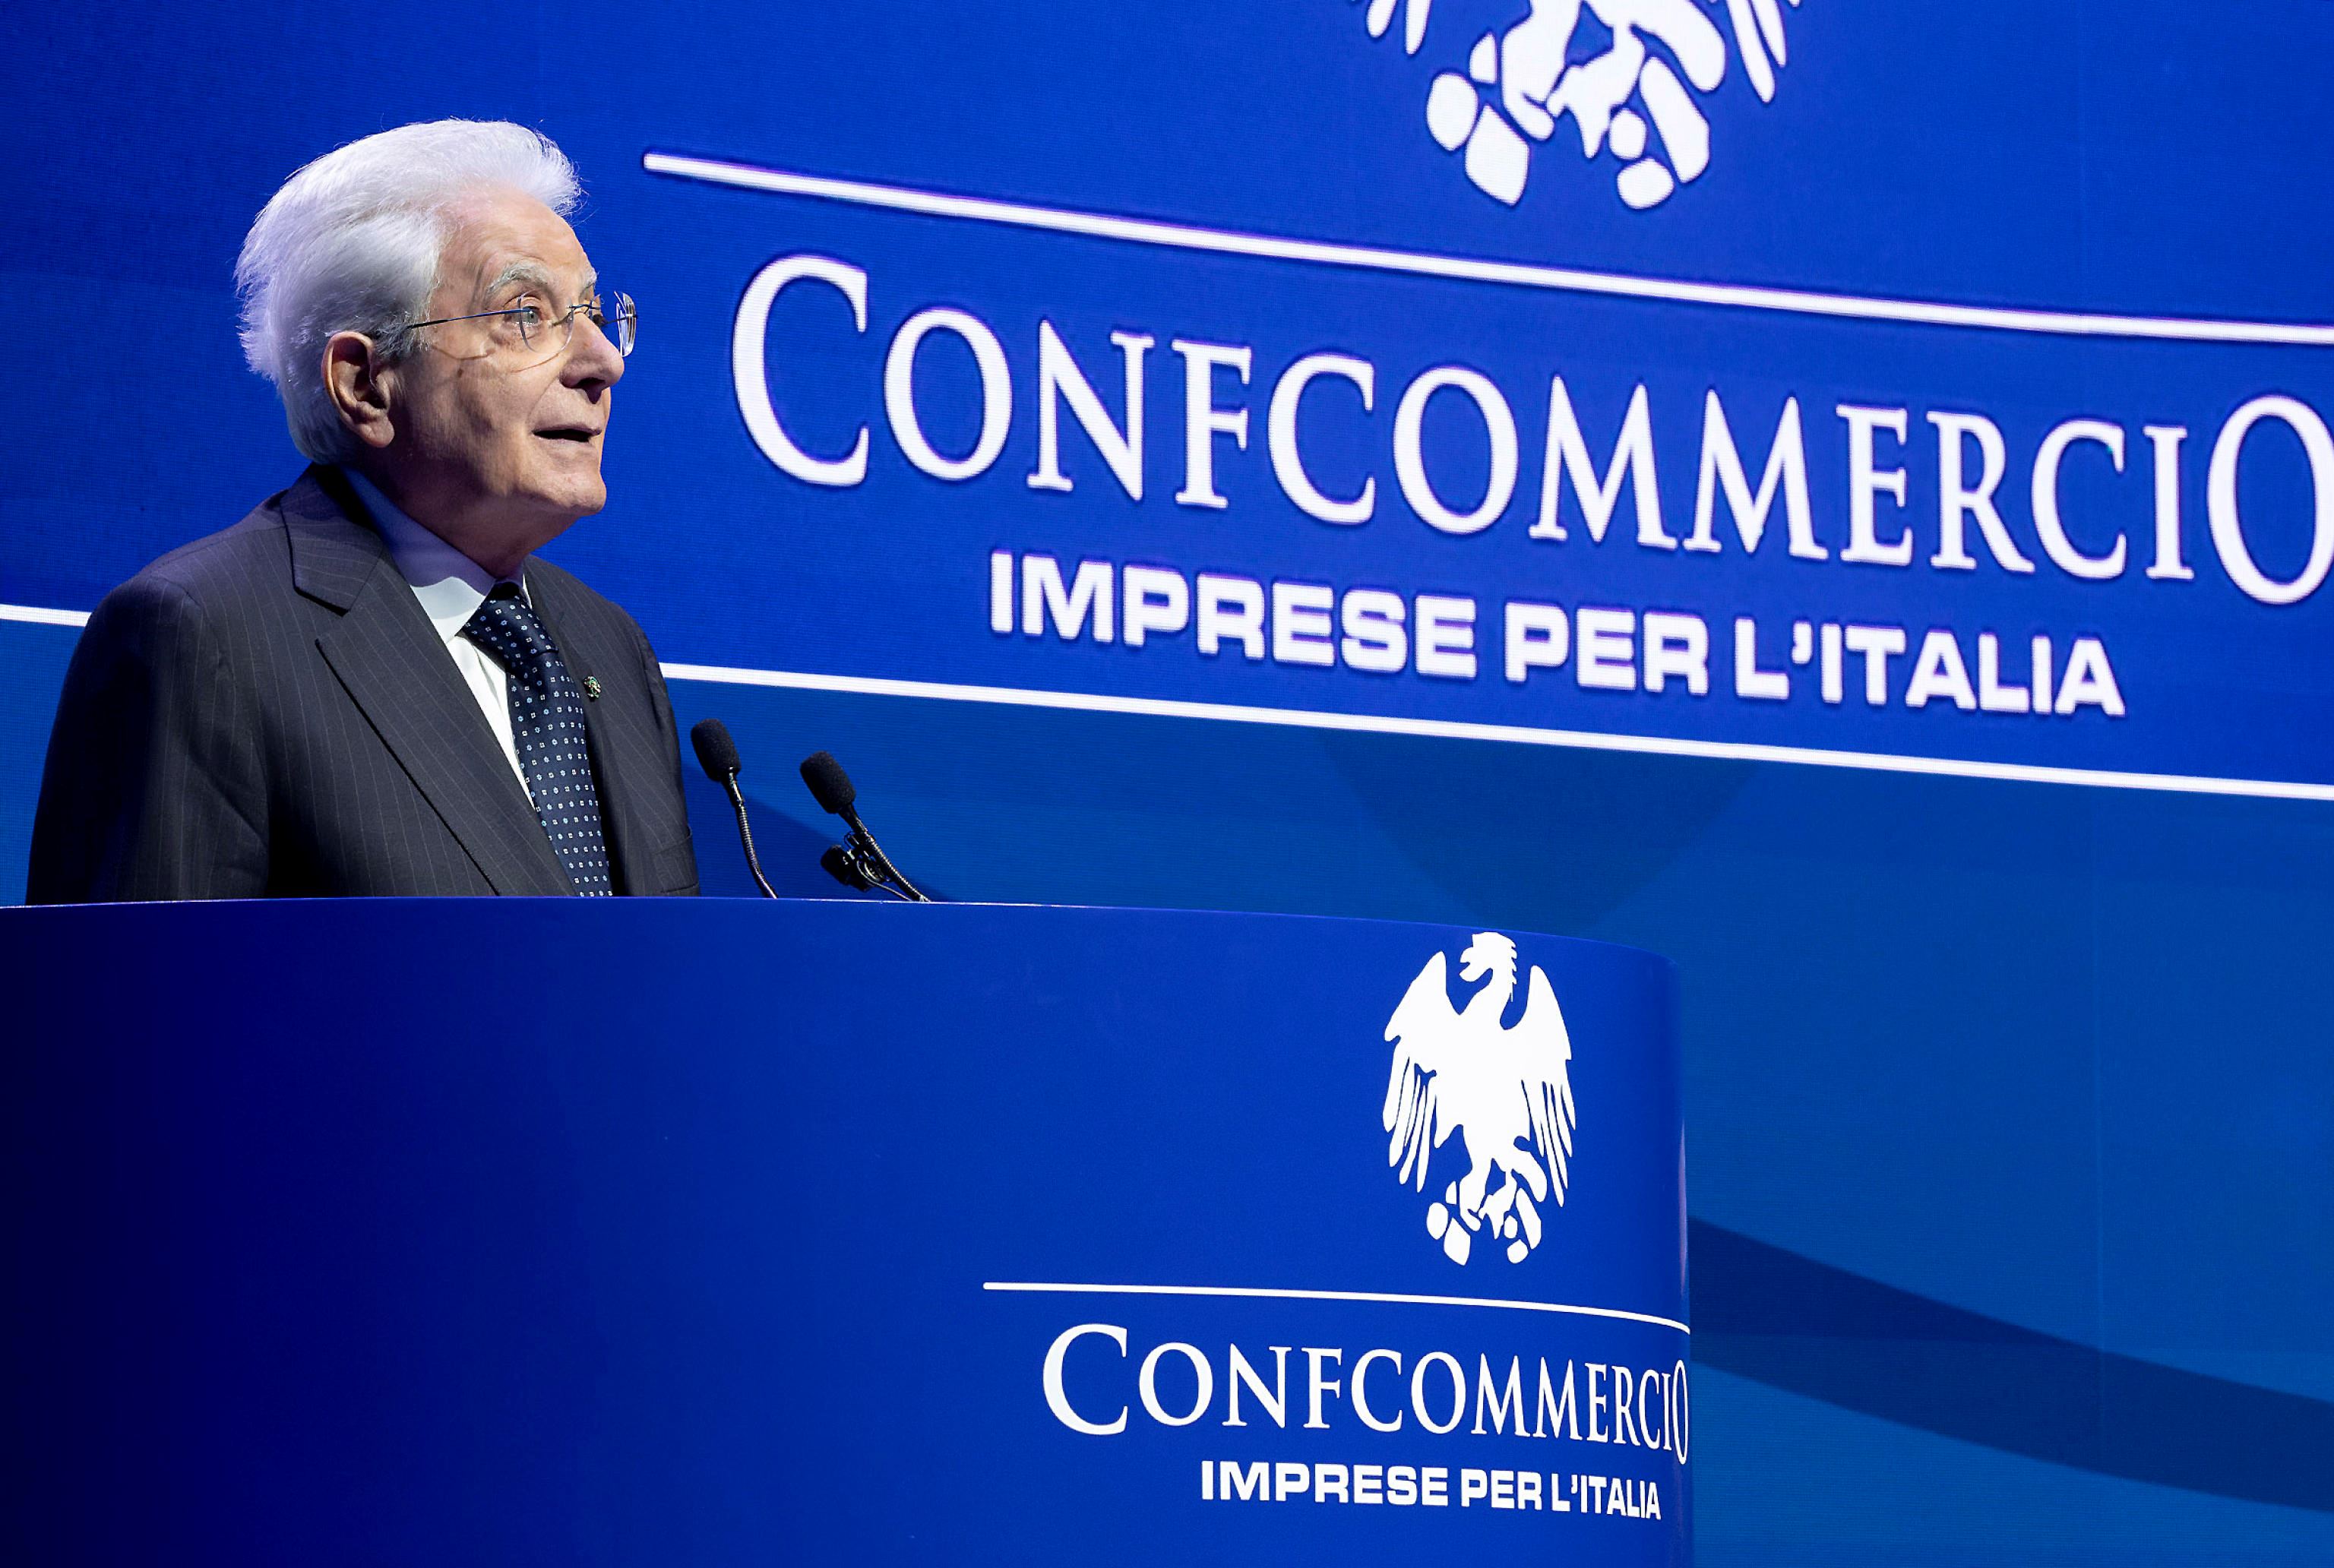 Il presidente Mattarella all'Assemblea di Confcommercio di oggi a Roma